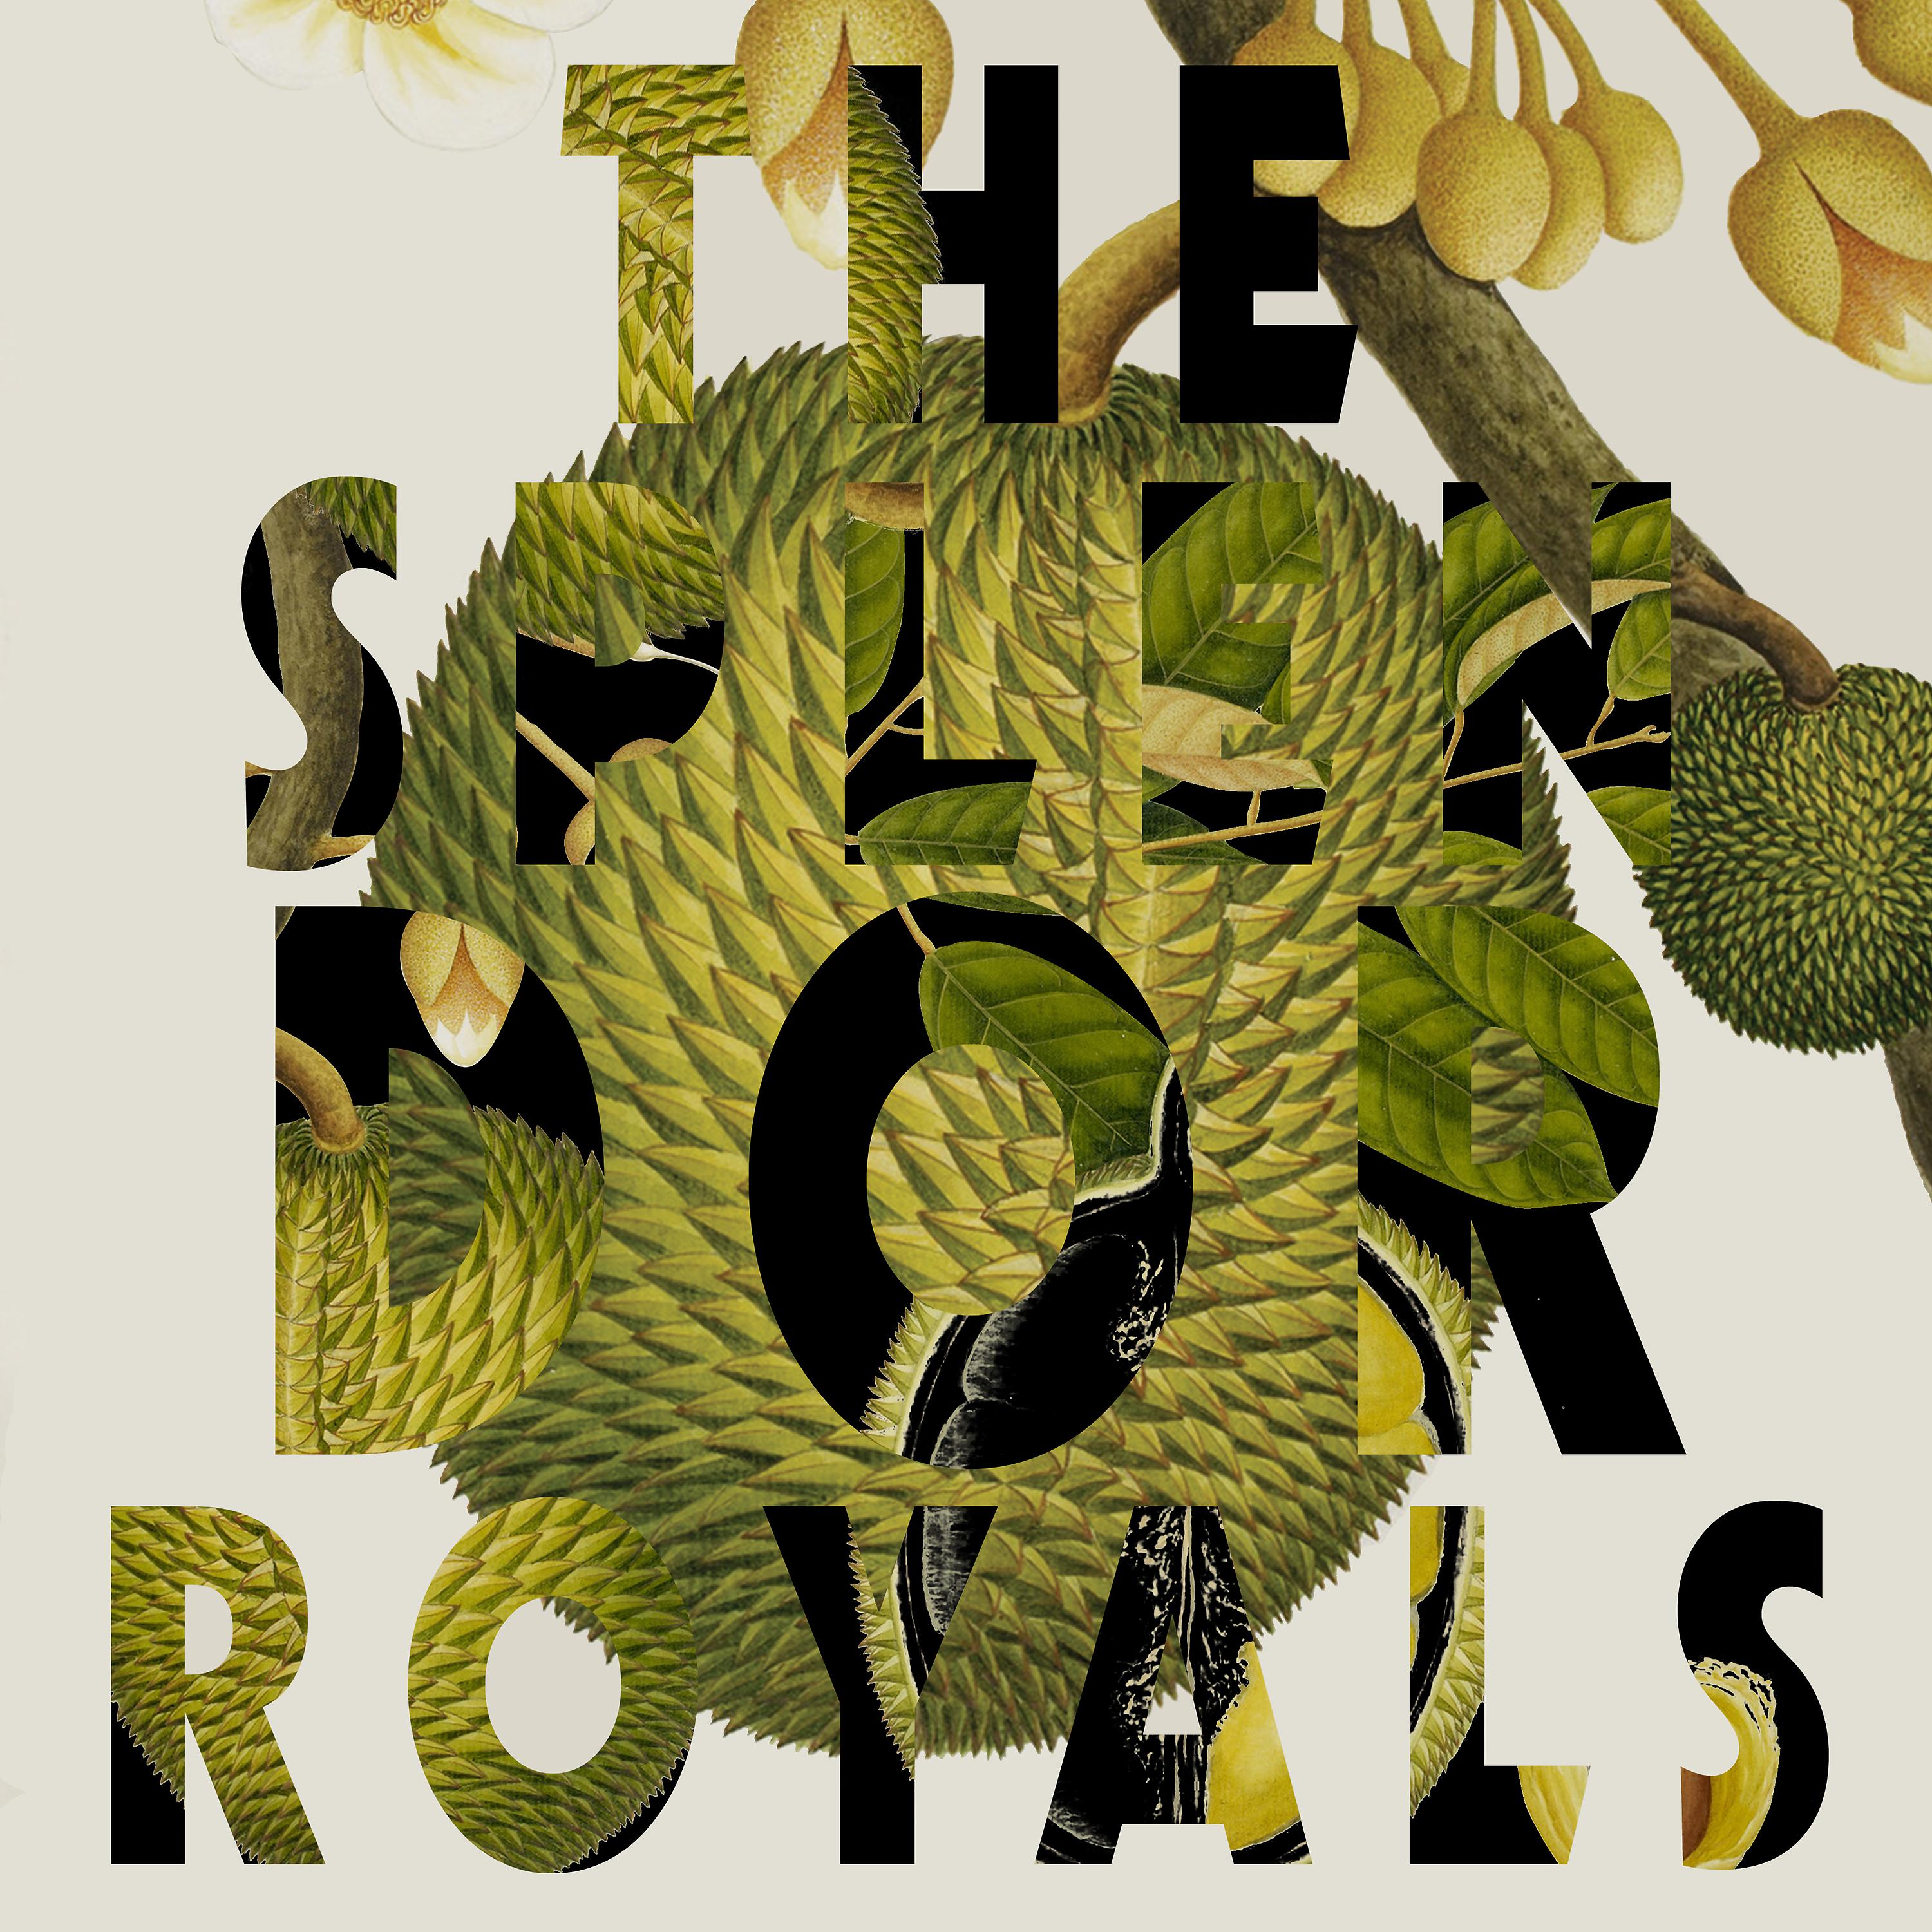 Постер альбома Royals